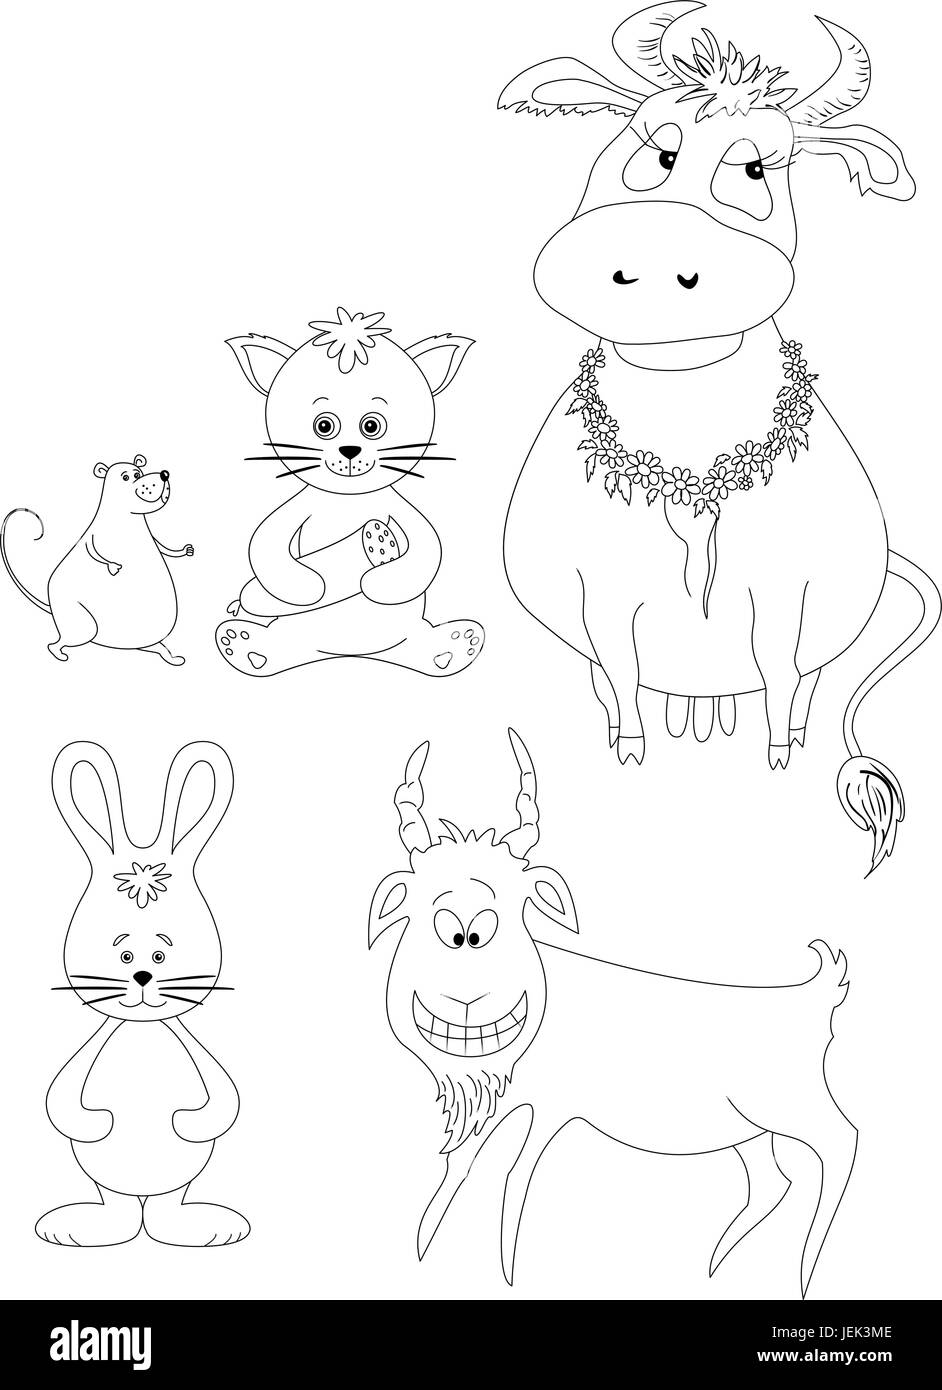 Comic-Tiere Set: Kuh, Katze mit Wurst, Maus, Ziege, Kaninchen. Schwarze Kontur auf weißem Hintergrund. Vektor-illustration Stock Vektor